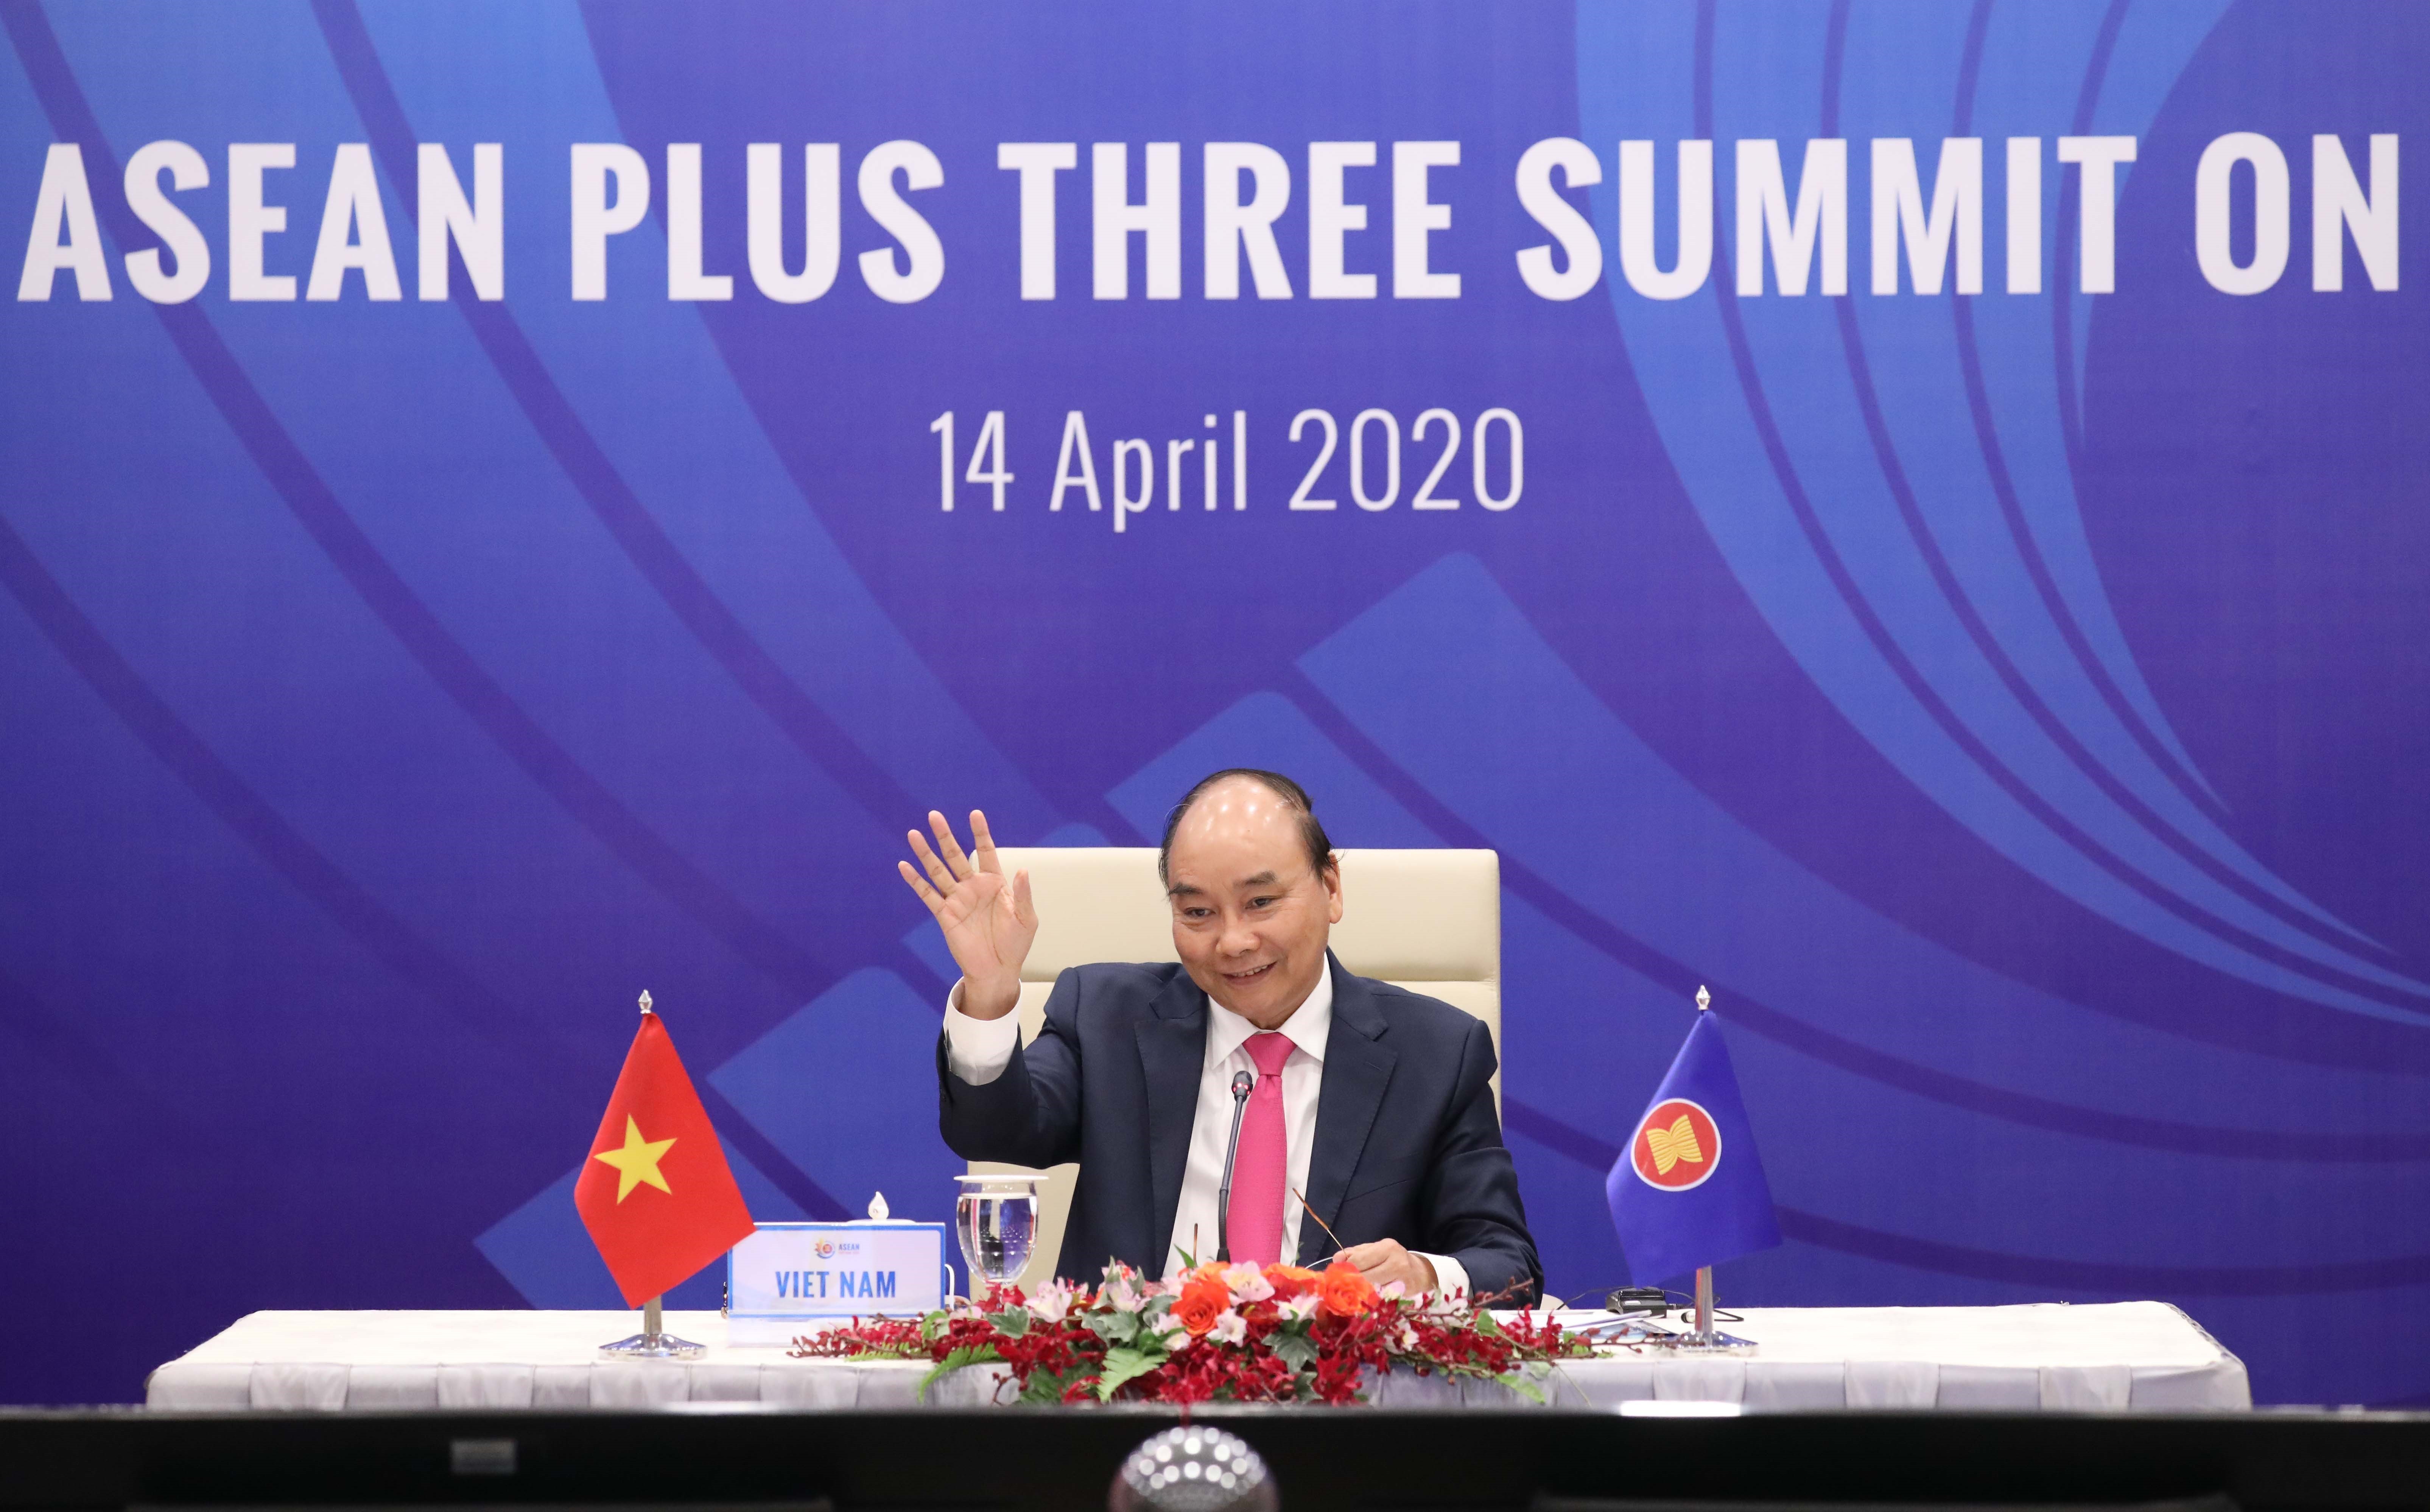 Thủ tướng Nguyễn Xuân Phúc, Chủ tịch ASEAN 2020 phát biểu bế mạc Hội nghị Cấp cao đặc biệt trực tuyến ASEAN với các đối tác Hàn Quốc, Nhật Bản và Trung Quốc (ASEAN+3) về ứng phó với dịch bệnh COVID-19. (Ảnh: Thống Nhất/TTXVN)